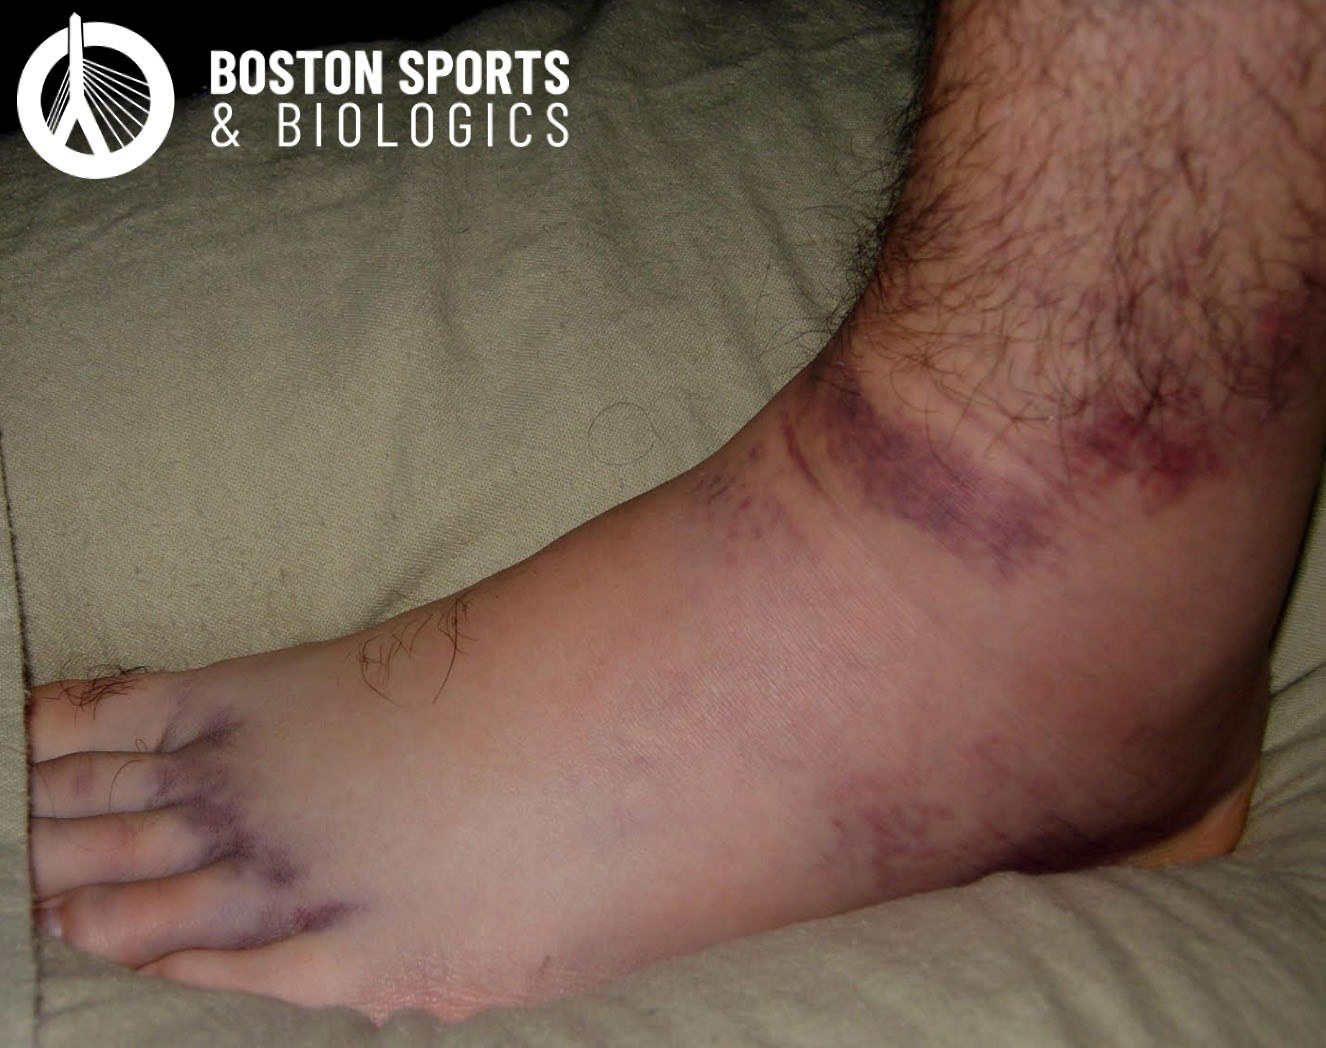 Ankle Sprain: Elite Sports Medicine + Orthopedics: Orthopedics